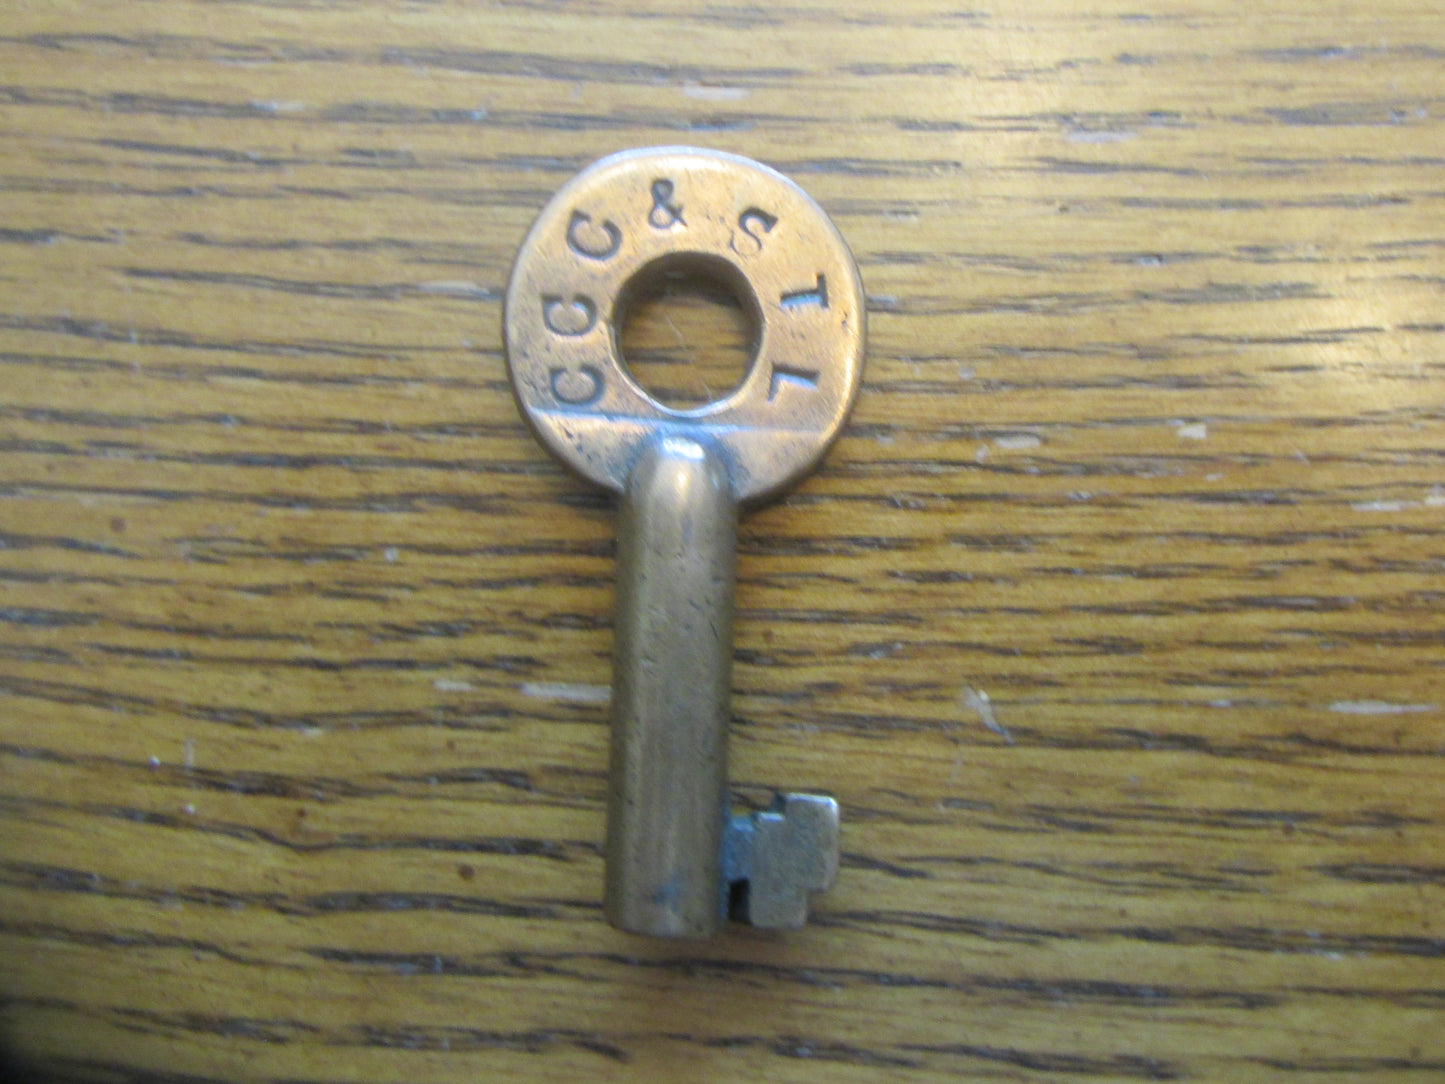 CCC & St Louis key